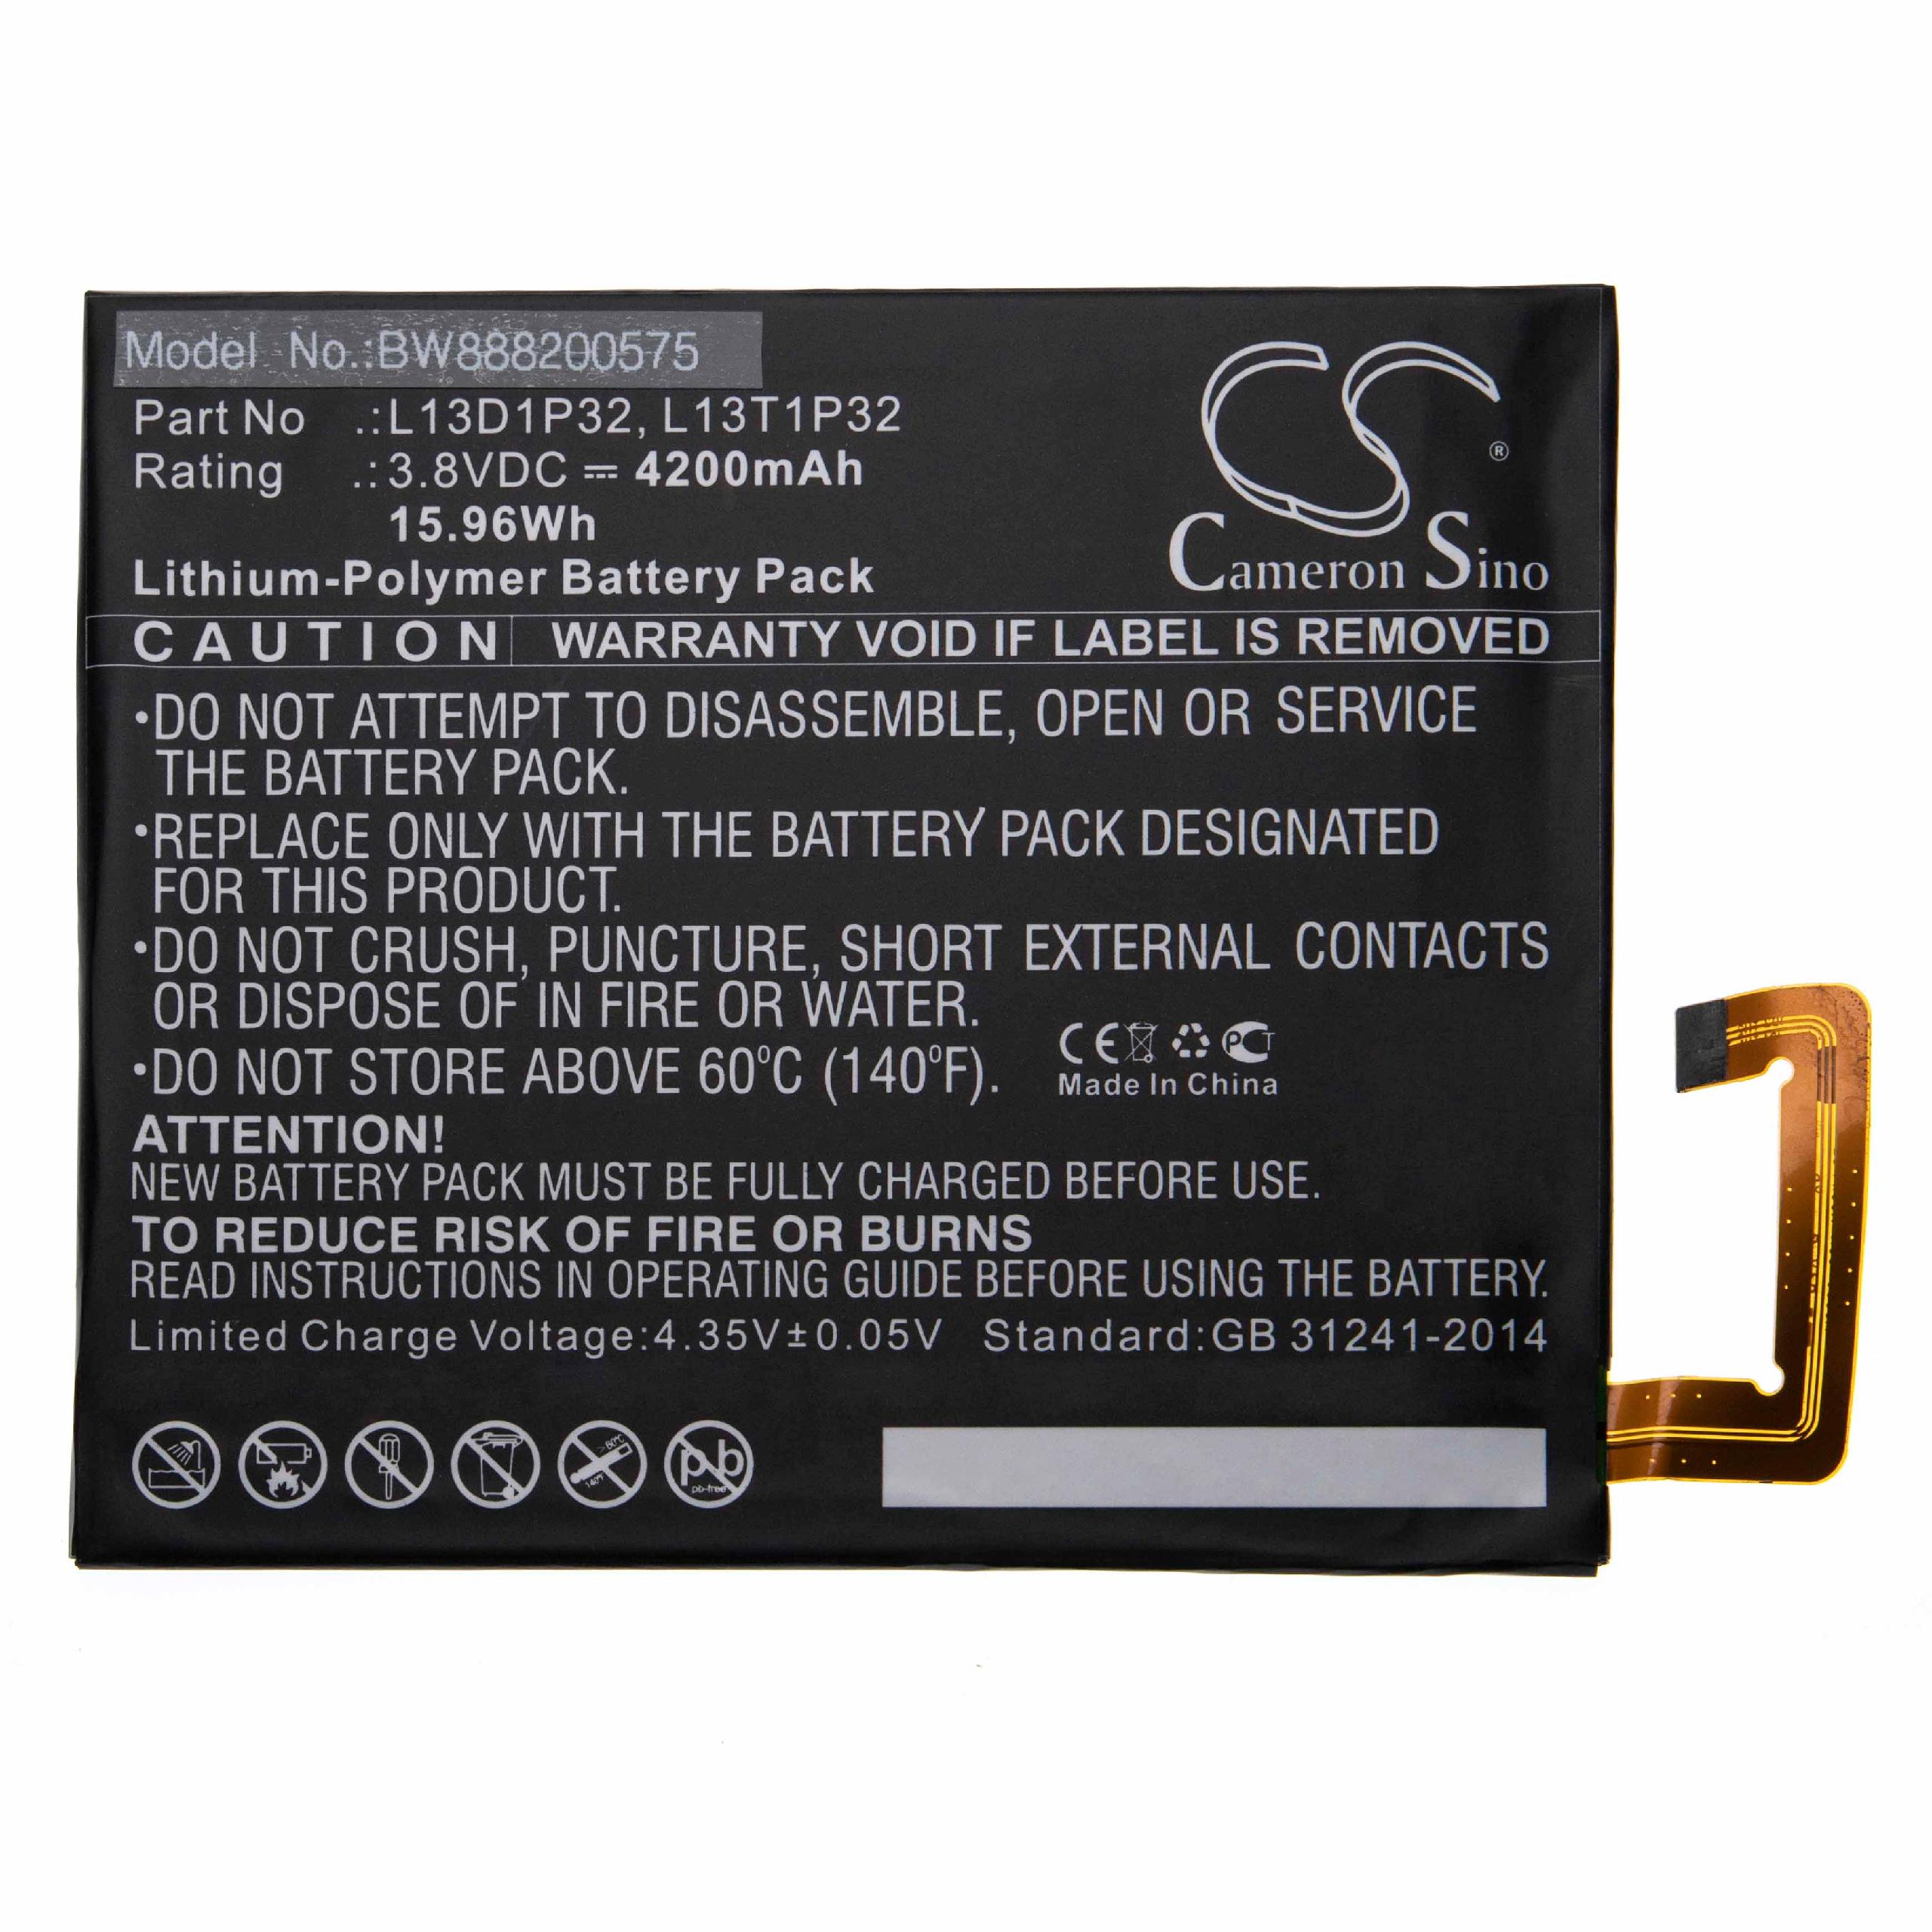 Akumulator zamiennik Lenovo L13D1P32, L13T1P32 - 4200 mAh 3,8 V LiPo